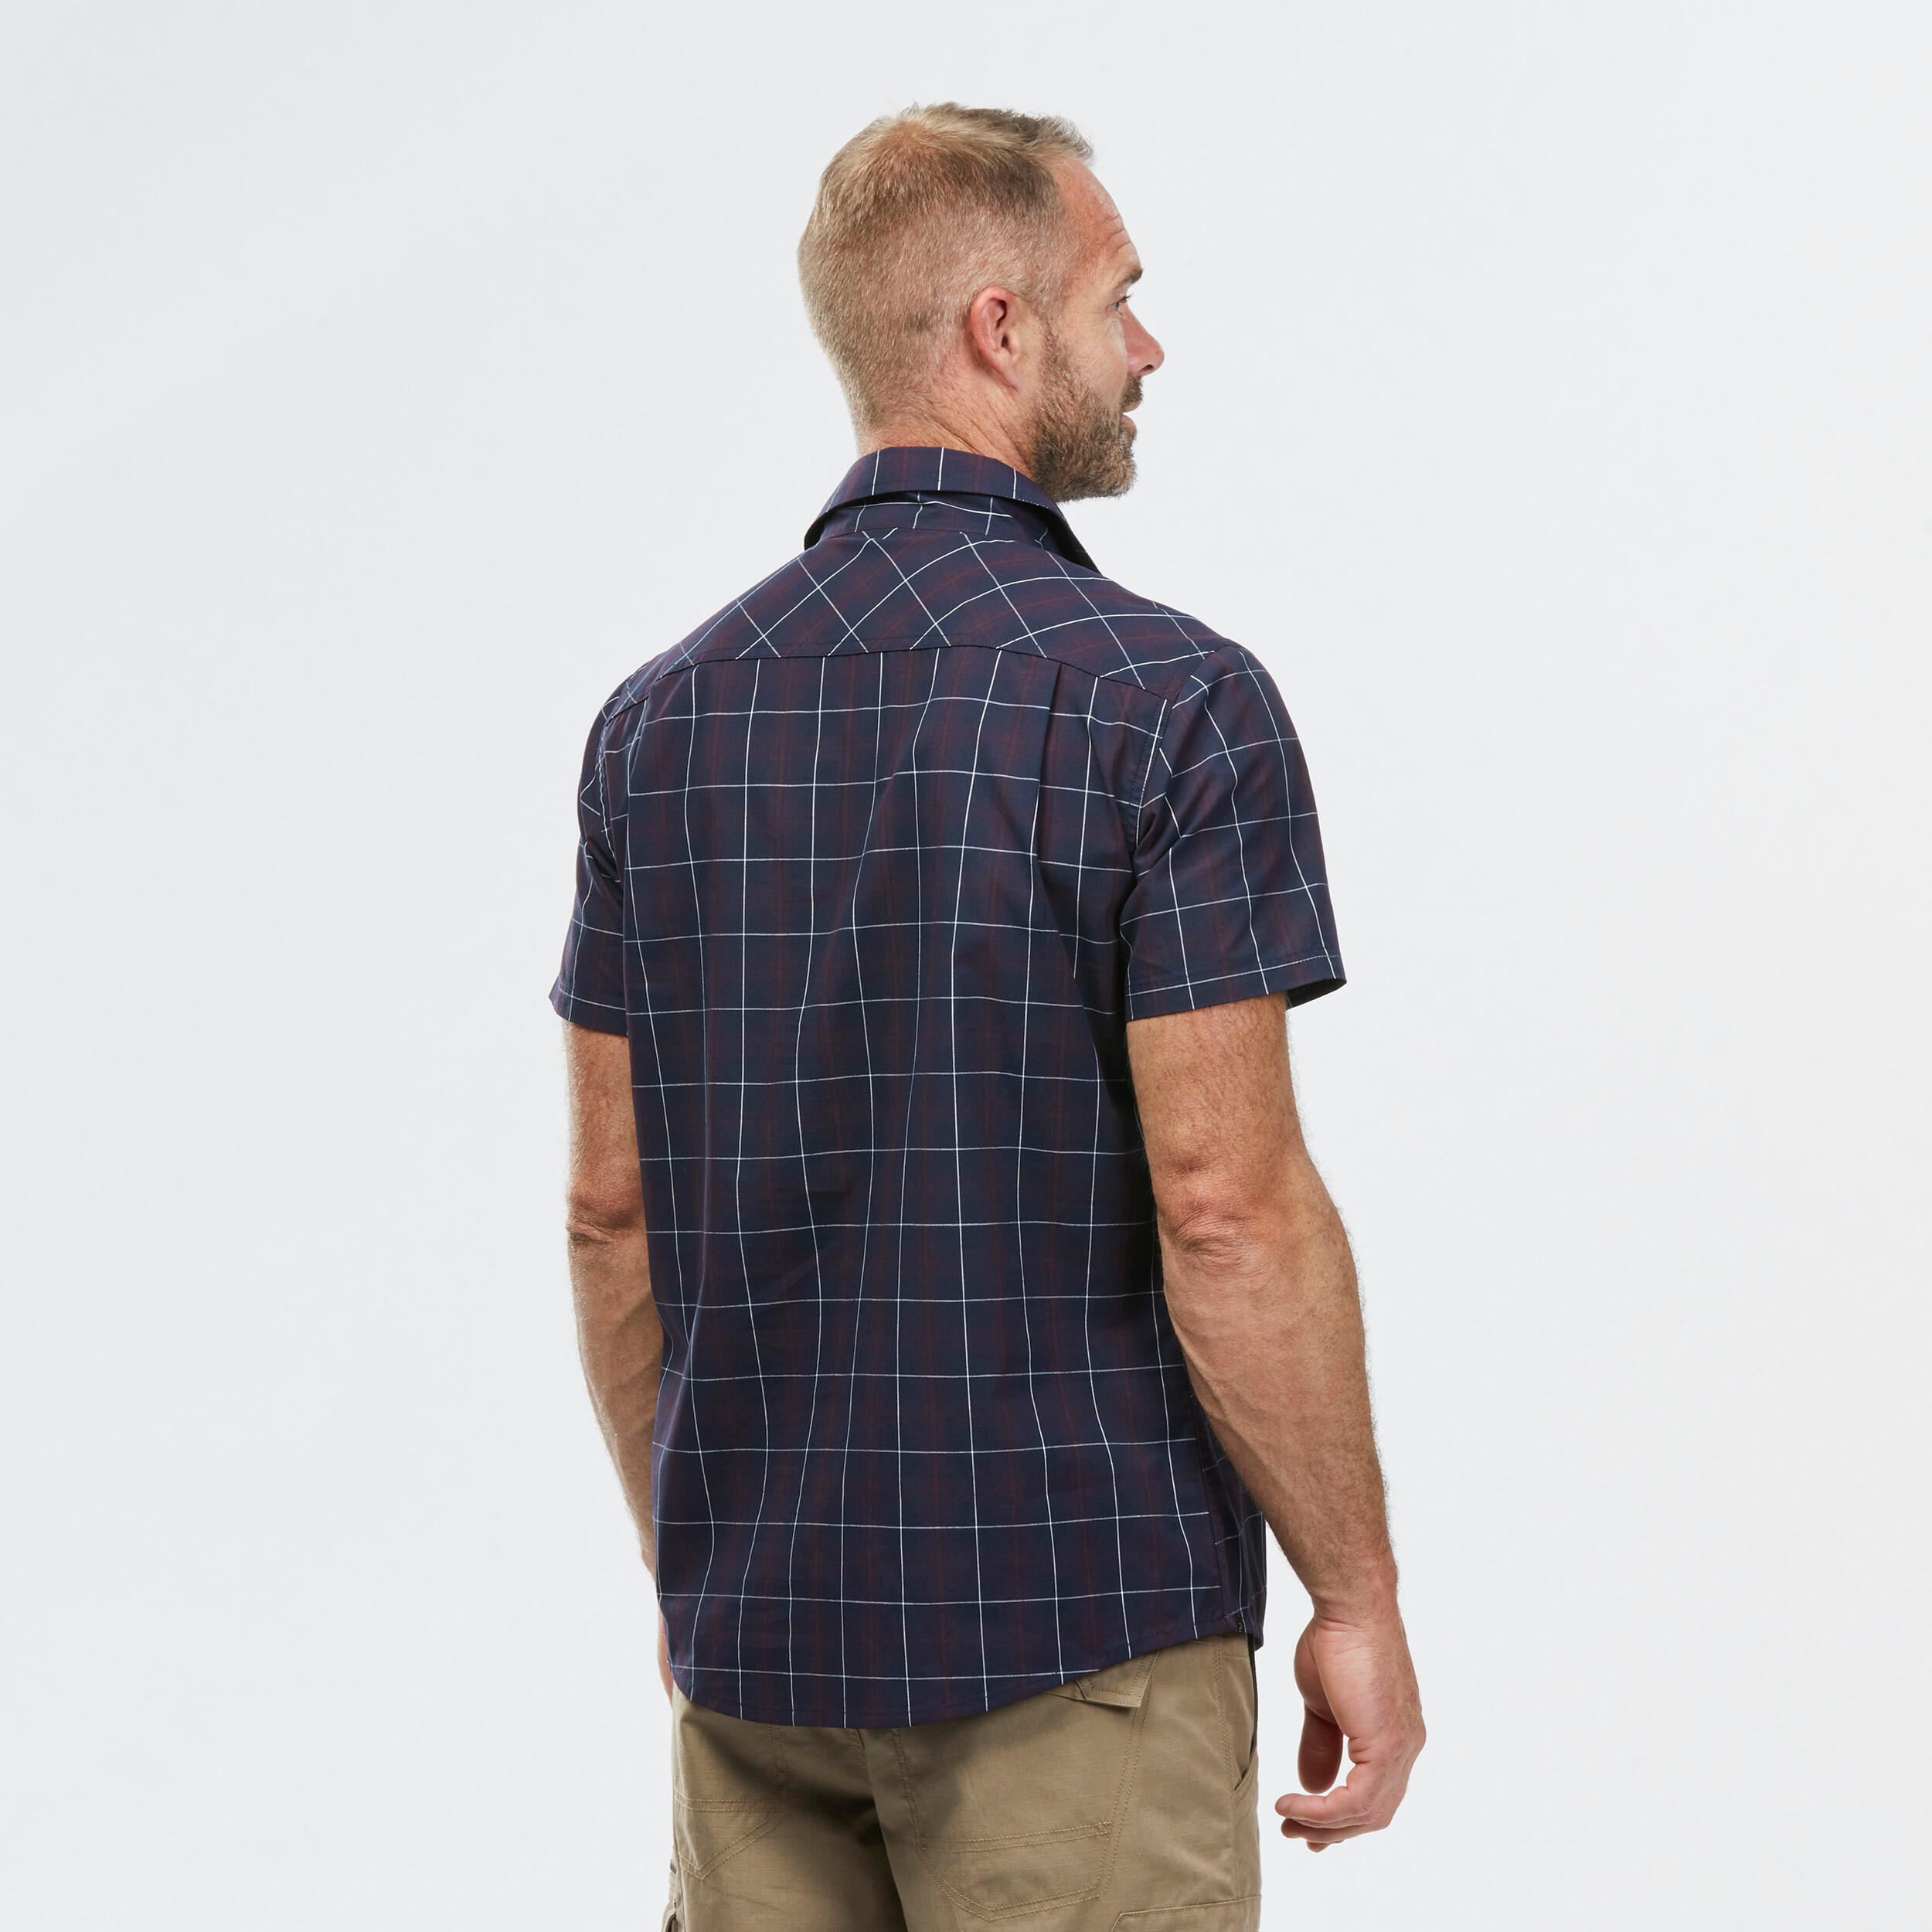 Men’s short-sleeved plaid travel trekking shirt TRAVEL 100 black 4/7